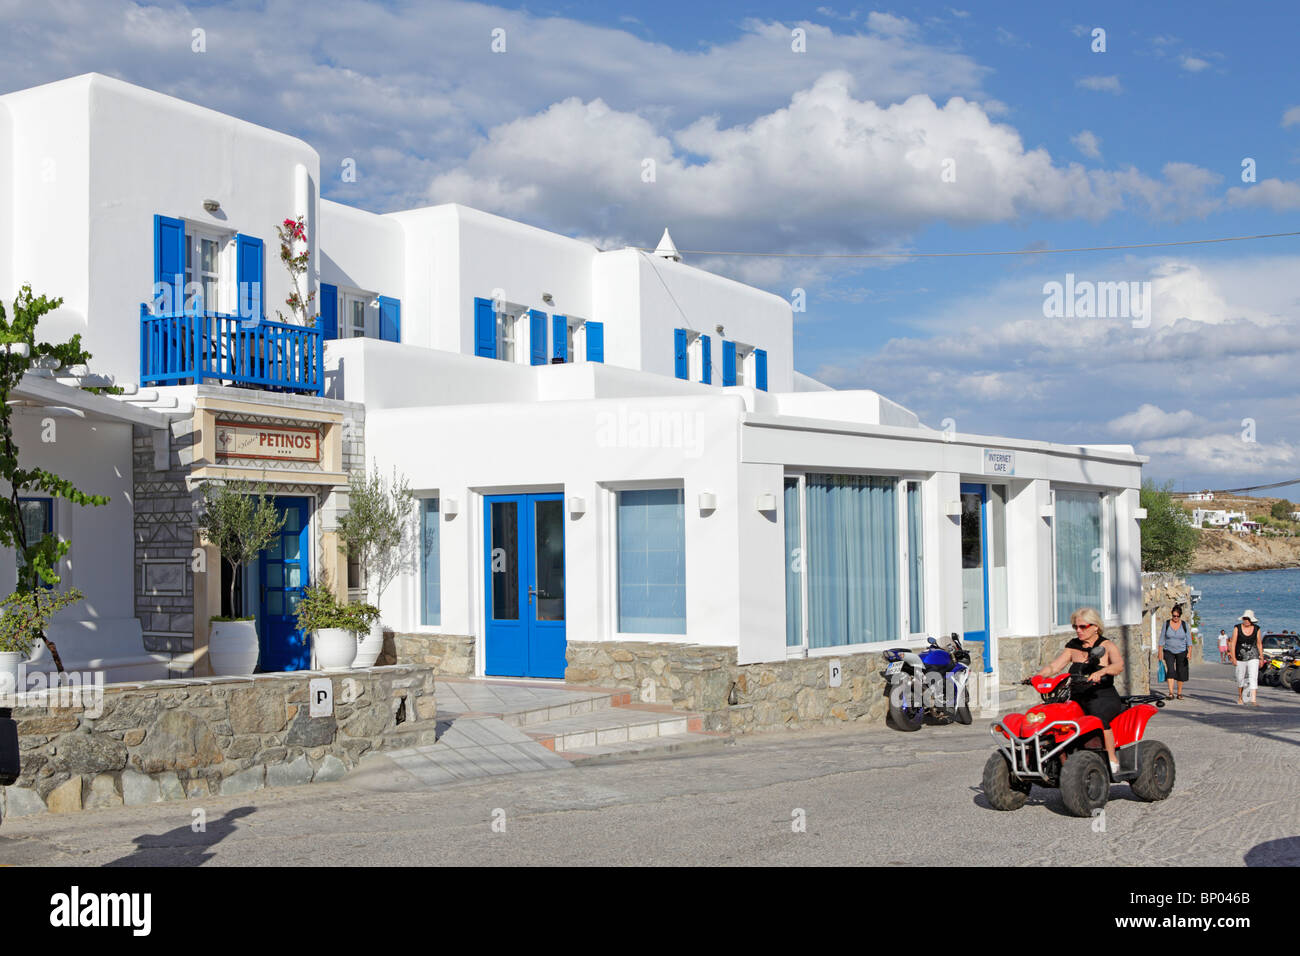 Hotel Petinos in Platis Gialos, Mykonos Island, Cyclades, Aegean Islands, Greece Stock Photo